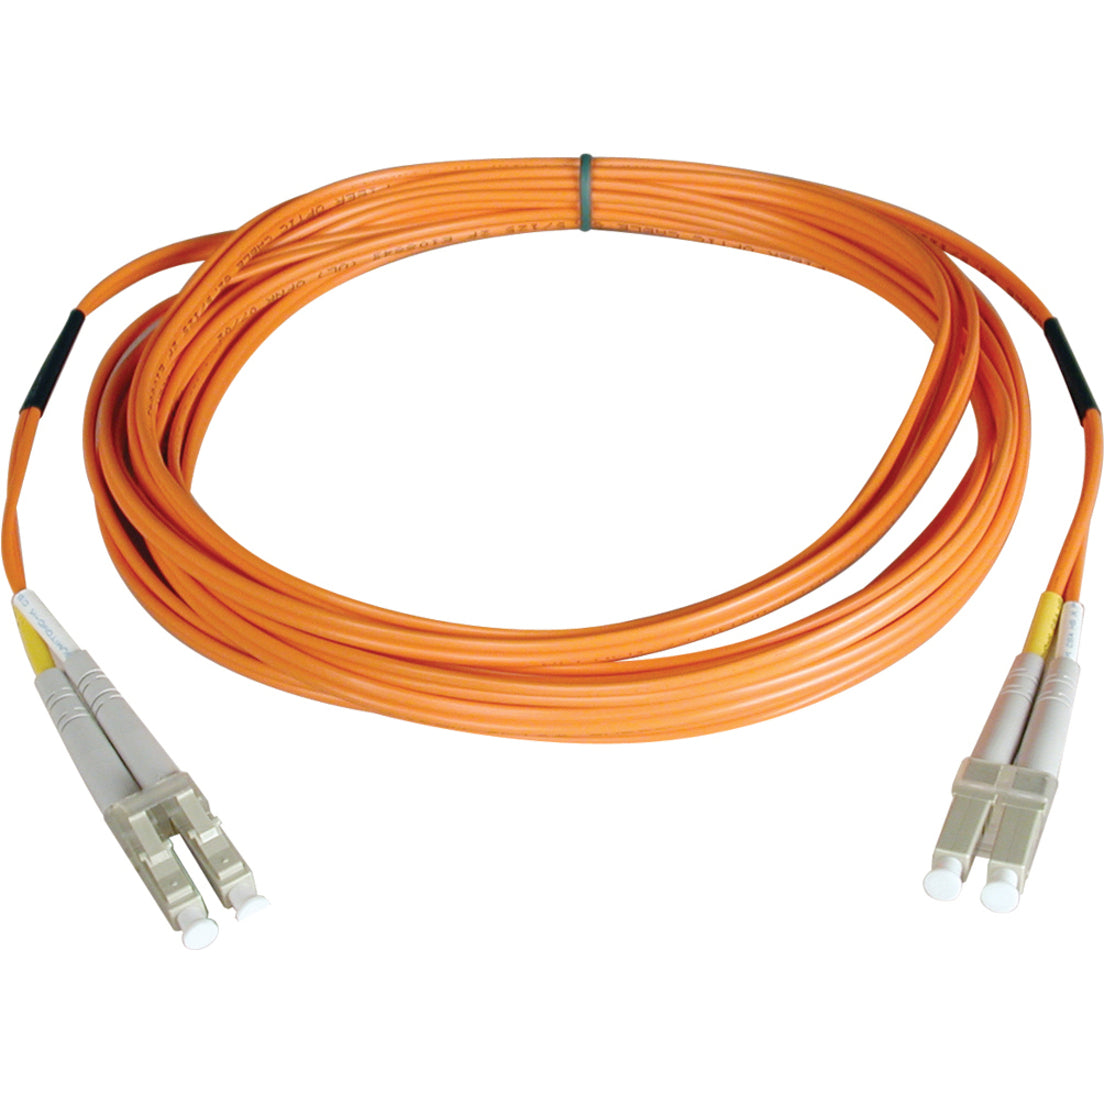 Tripp Lite N520-152M Premium Fibre Channel Patch Cable, 500 ft, Lifetime Warranty